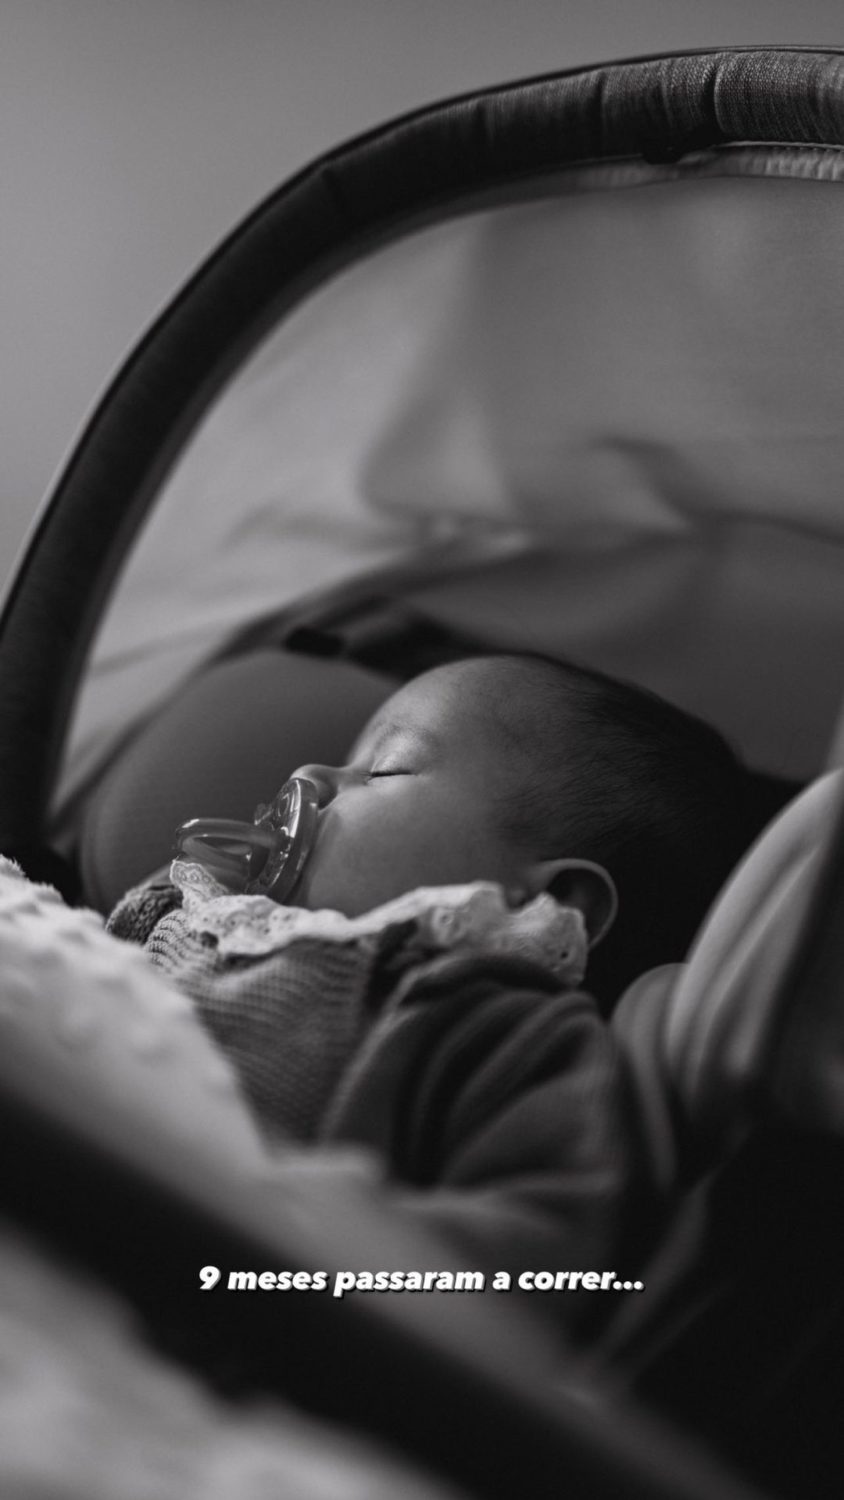 Fernando Daniel revela (nova) foto da filha bebé em dia especial: &#8220;9 meses passaram a correr&#8221;